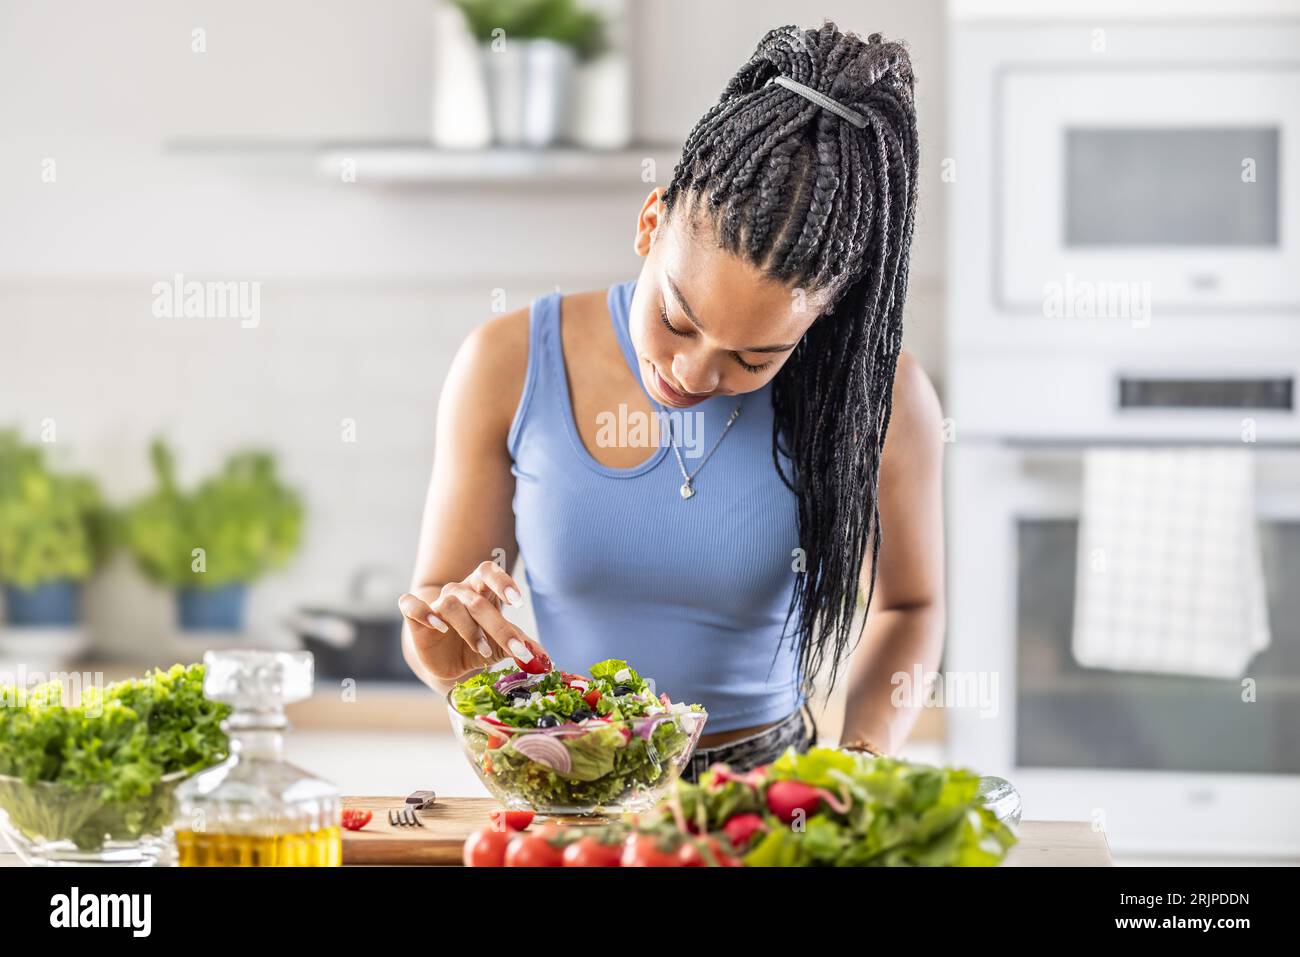 Junge afroamerikanische Frau bereitet gesunden Salat zu, fügt Tomaten hinzu. Stockfoto